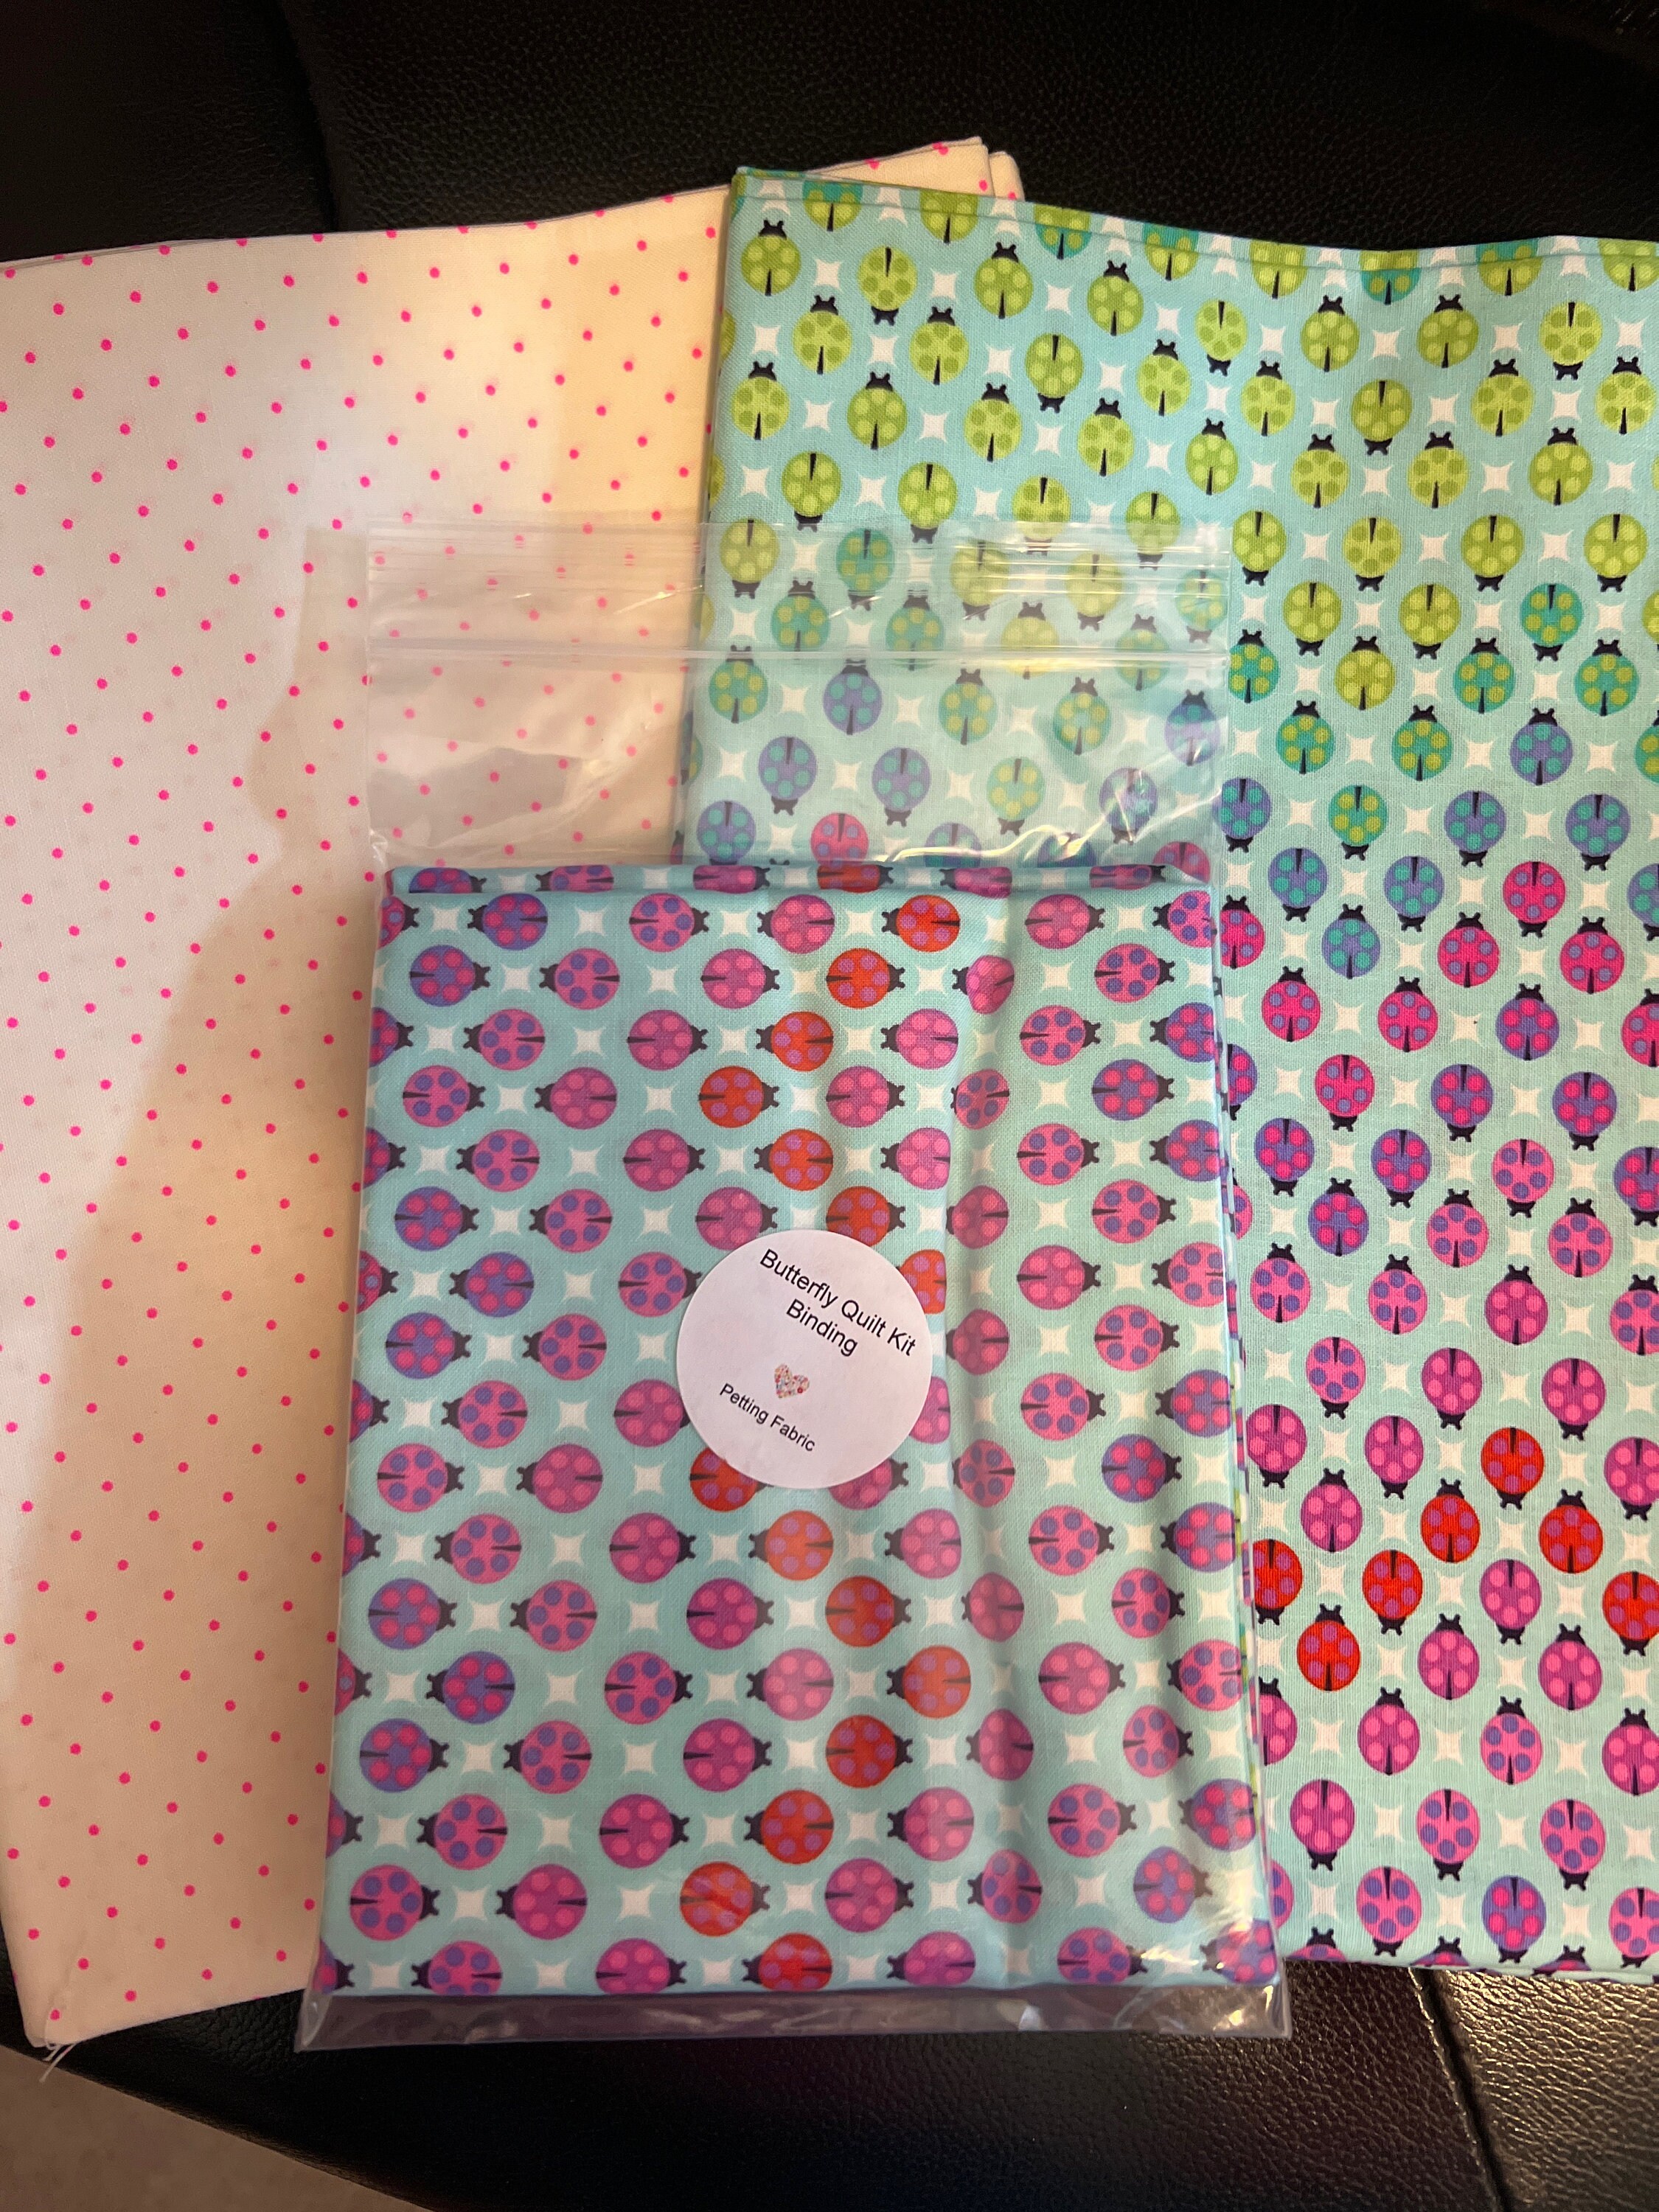 Tula Pink All Stars Fabric Bundle - Petting Fabric